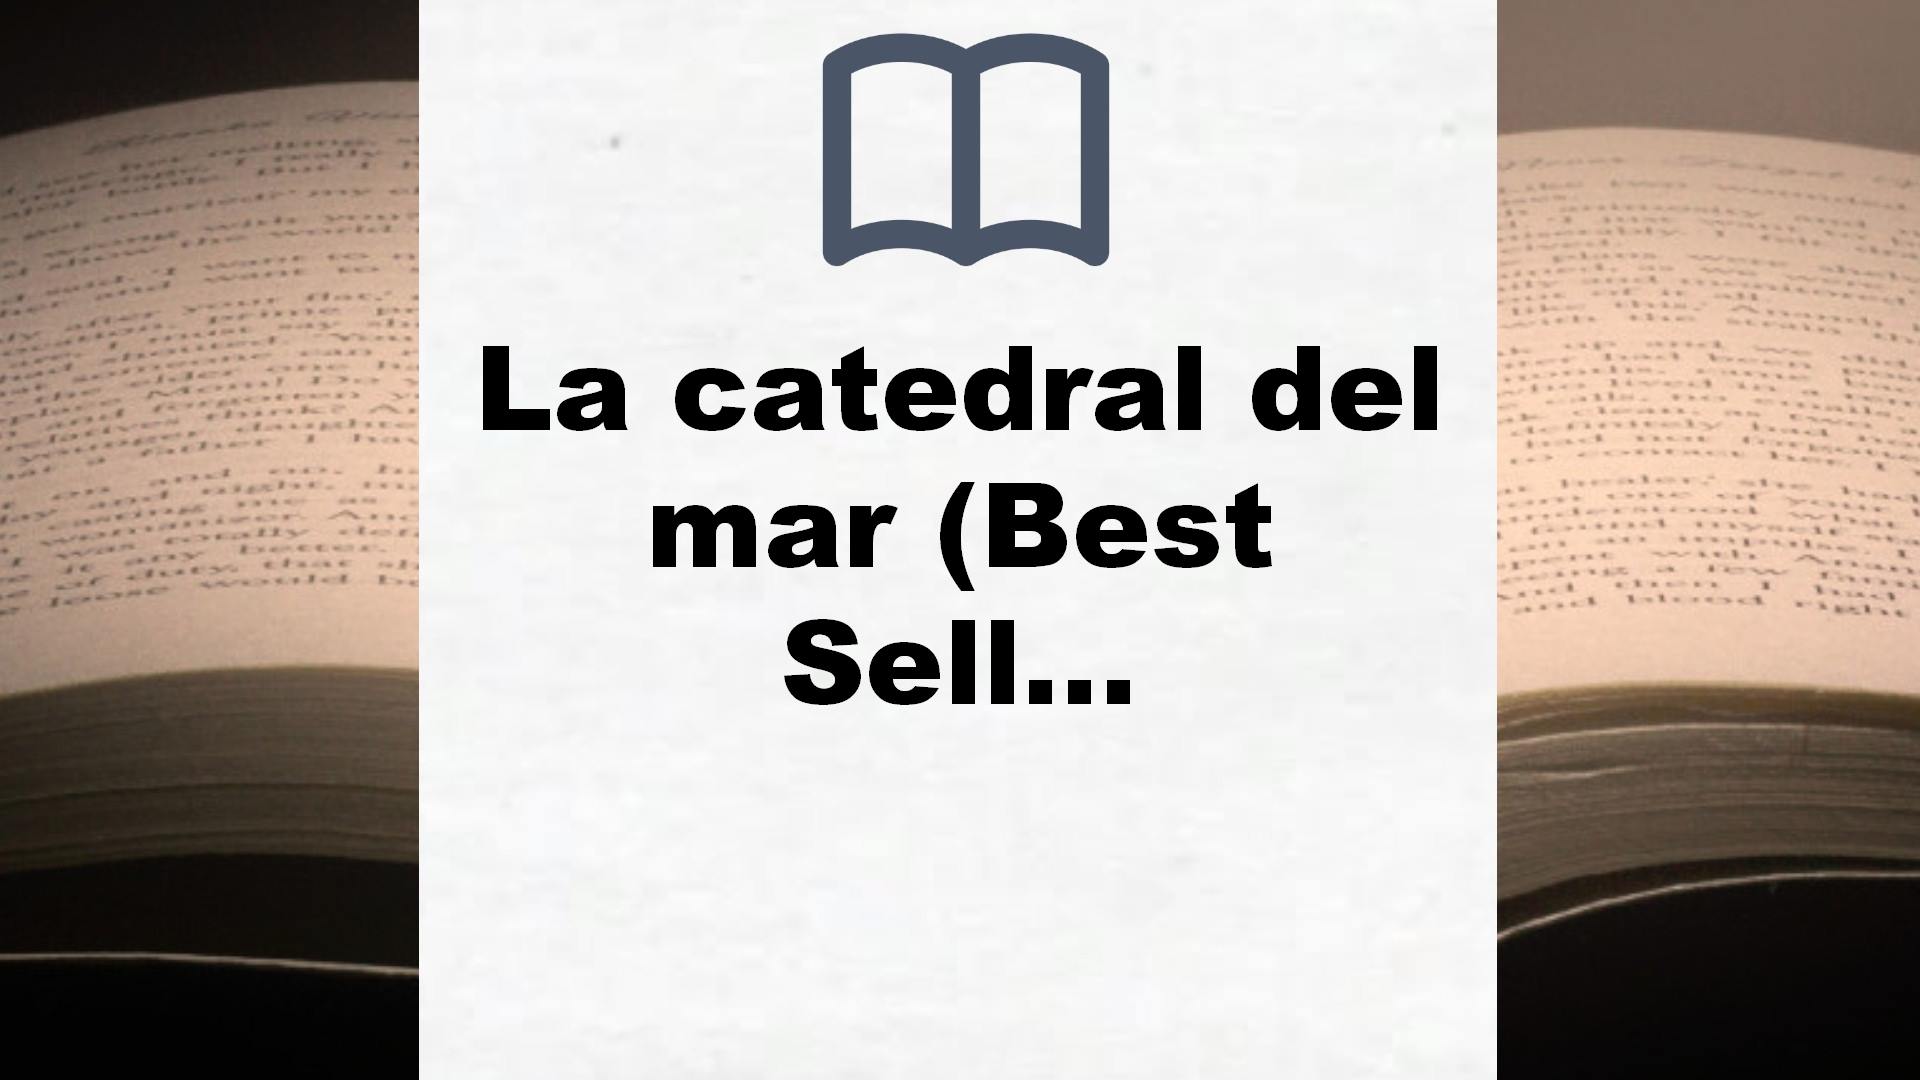 La catedral del mar (Best Seller) – Reseña del libro